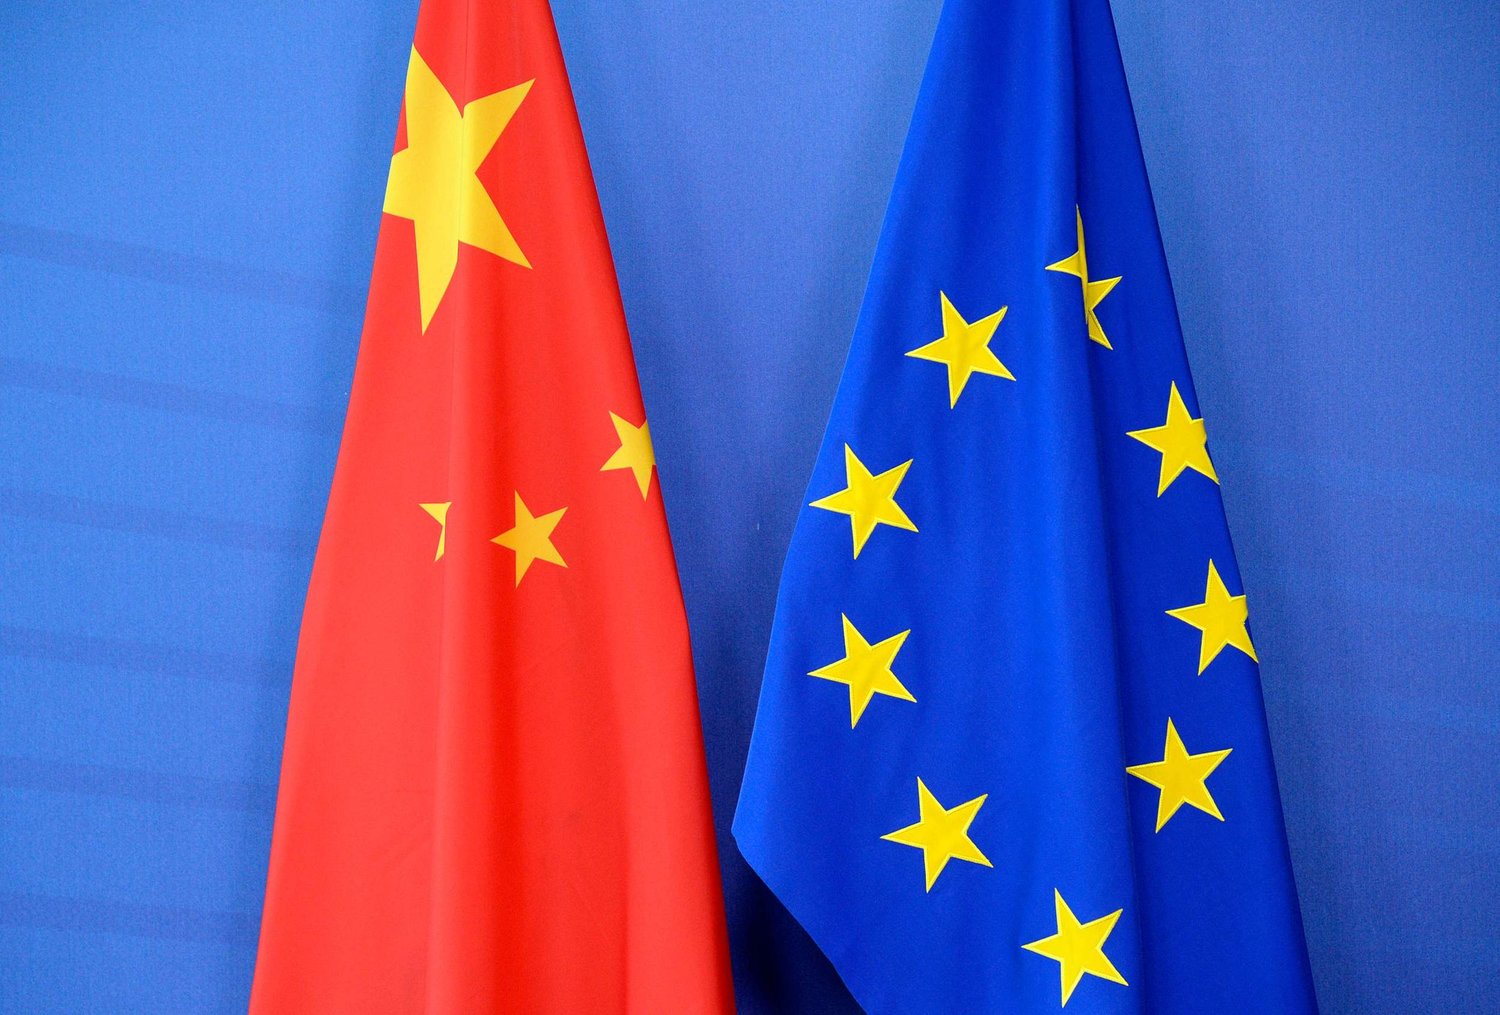 貿易戰宣布休兵 歐盟暫停對美加徵報復性關稅 矛頭改對準中國